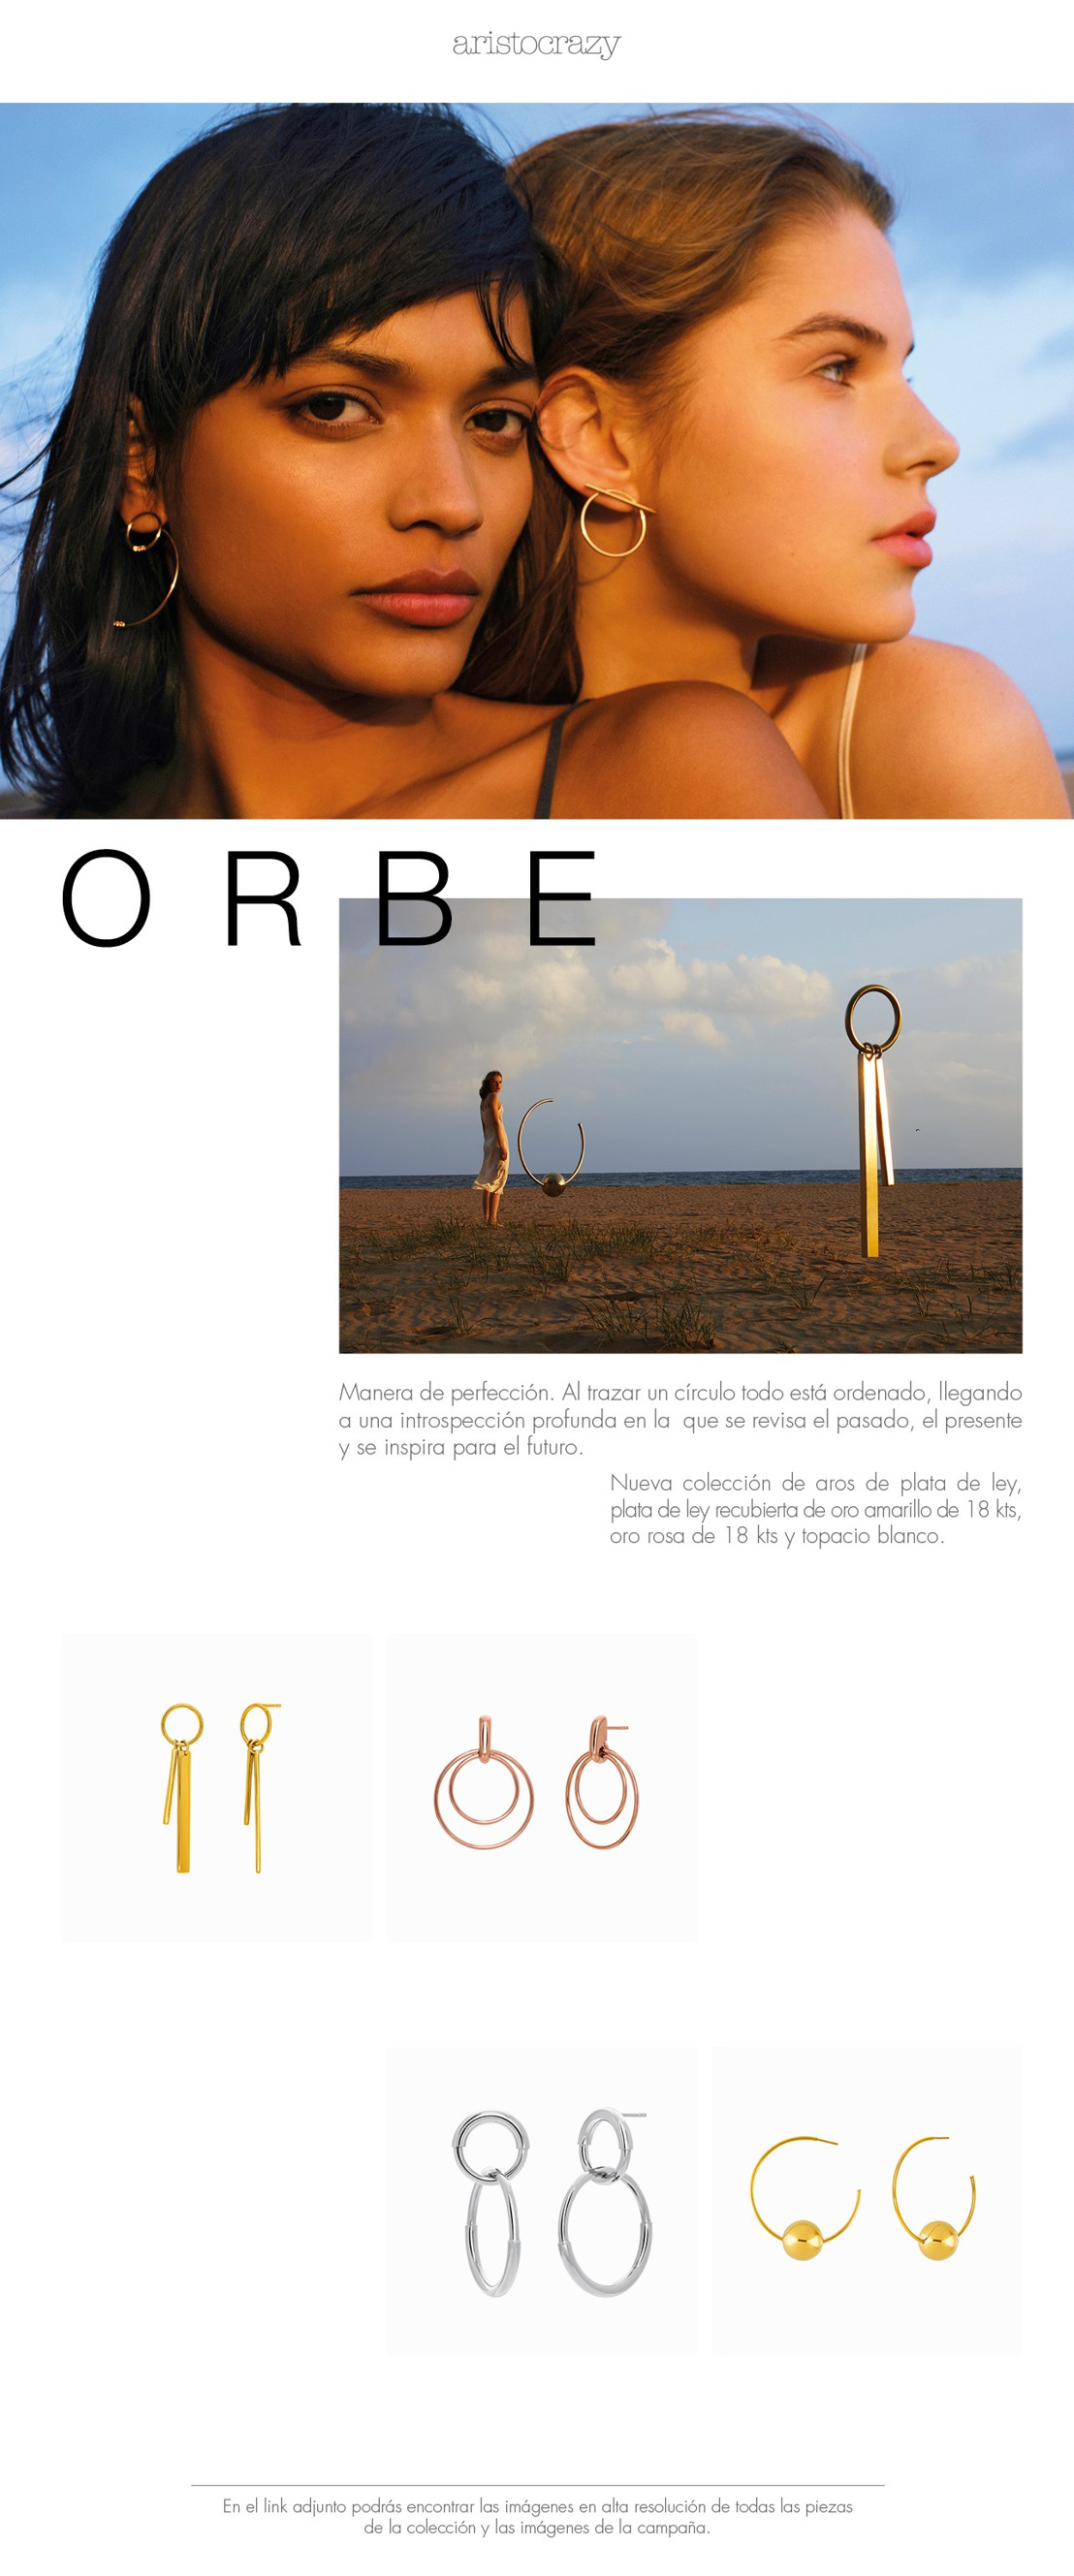 ORBE, la nueva colección de Aristocrazy